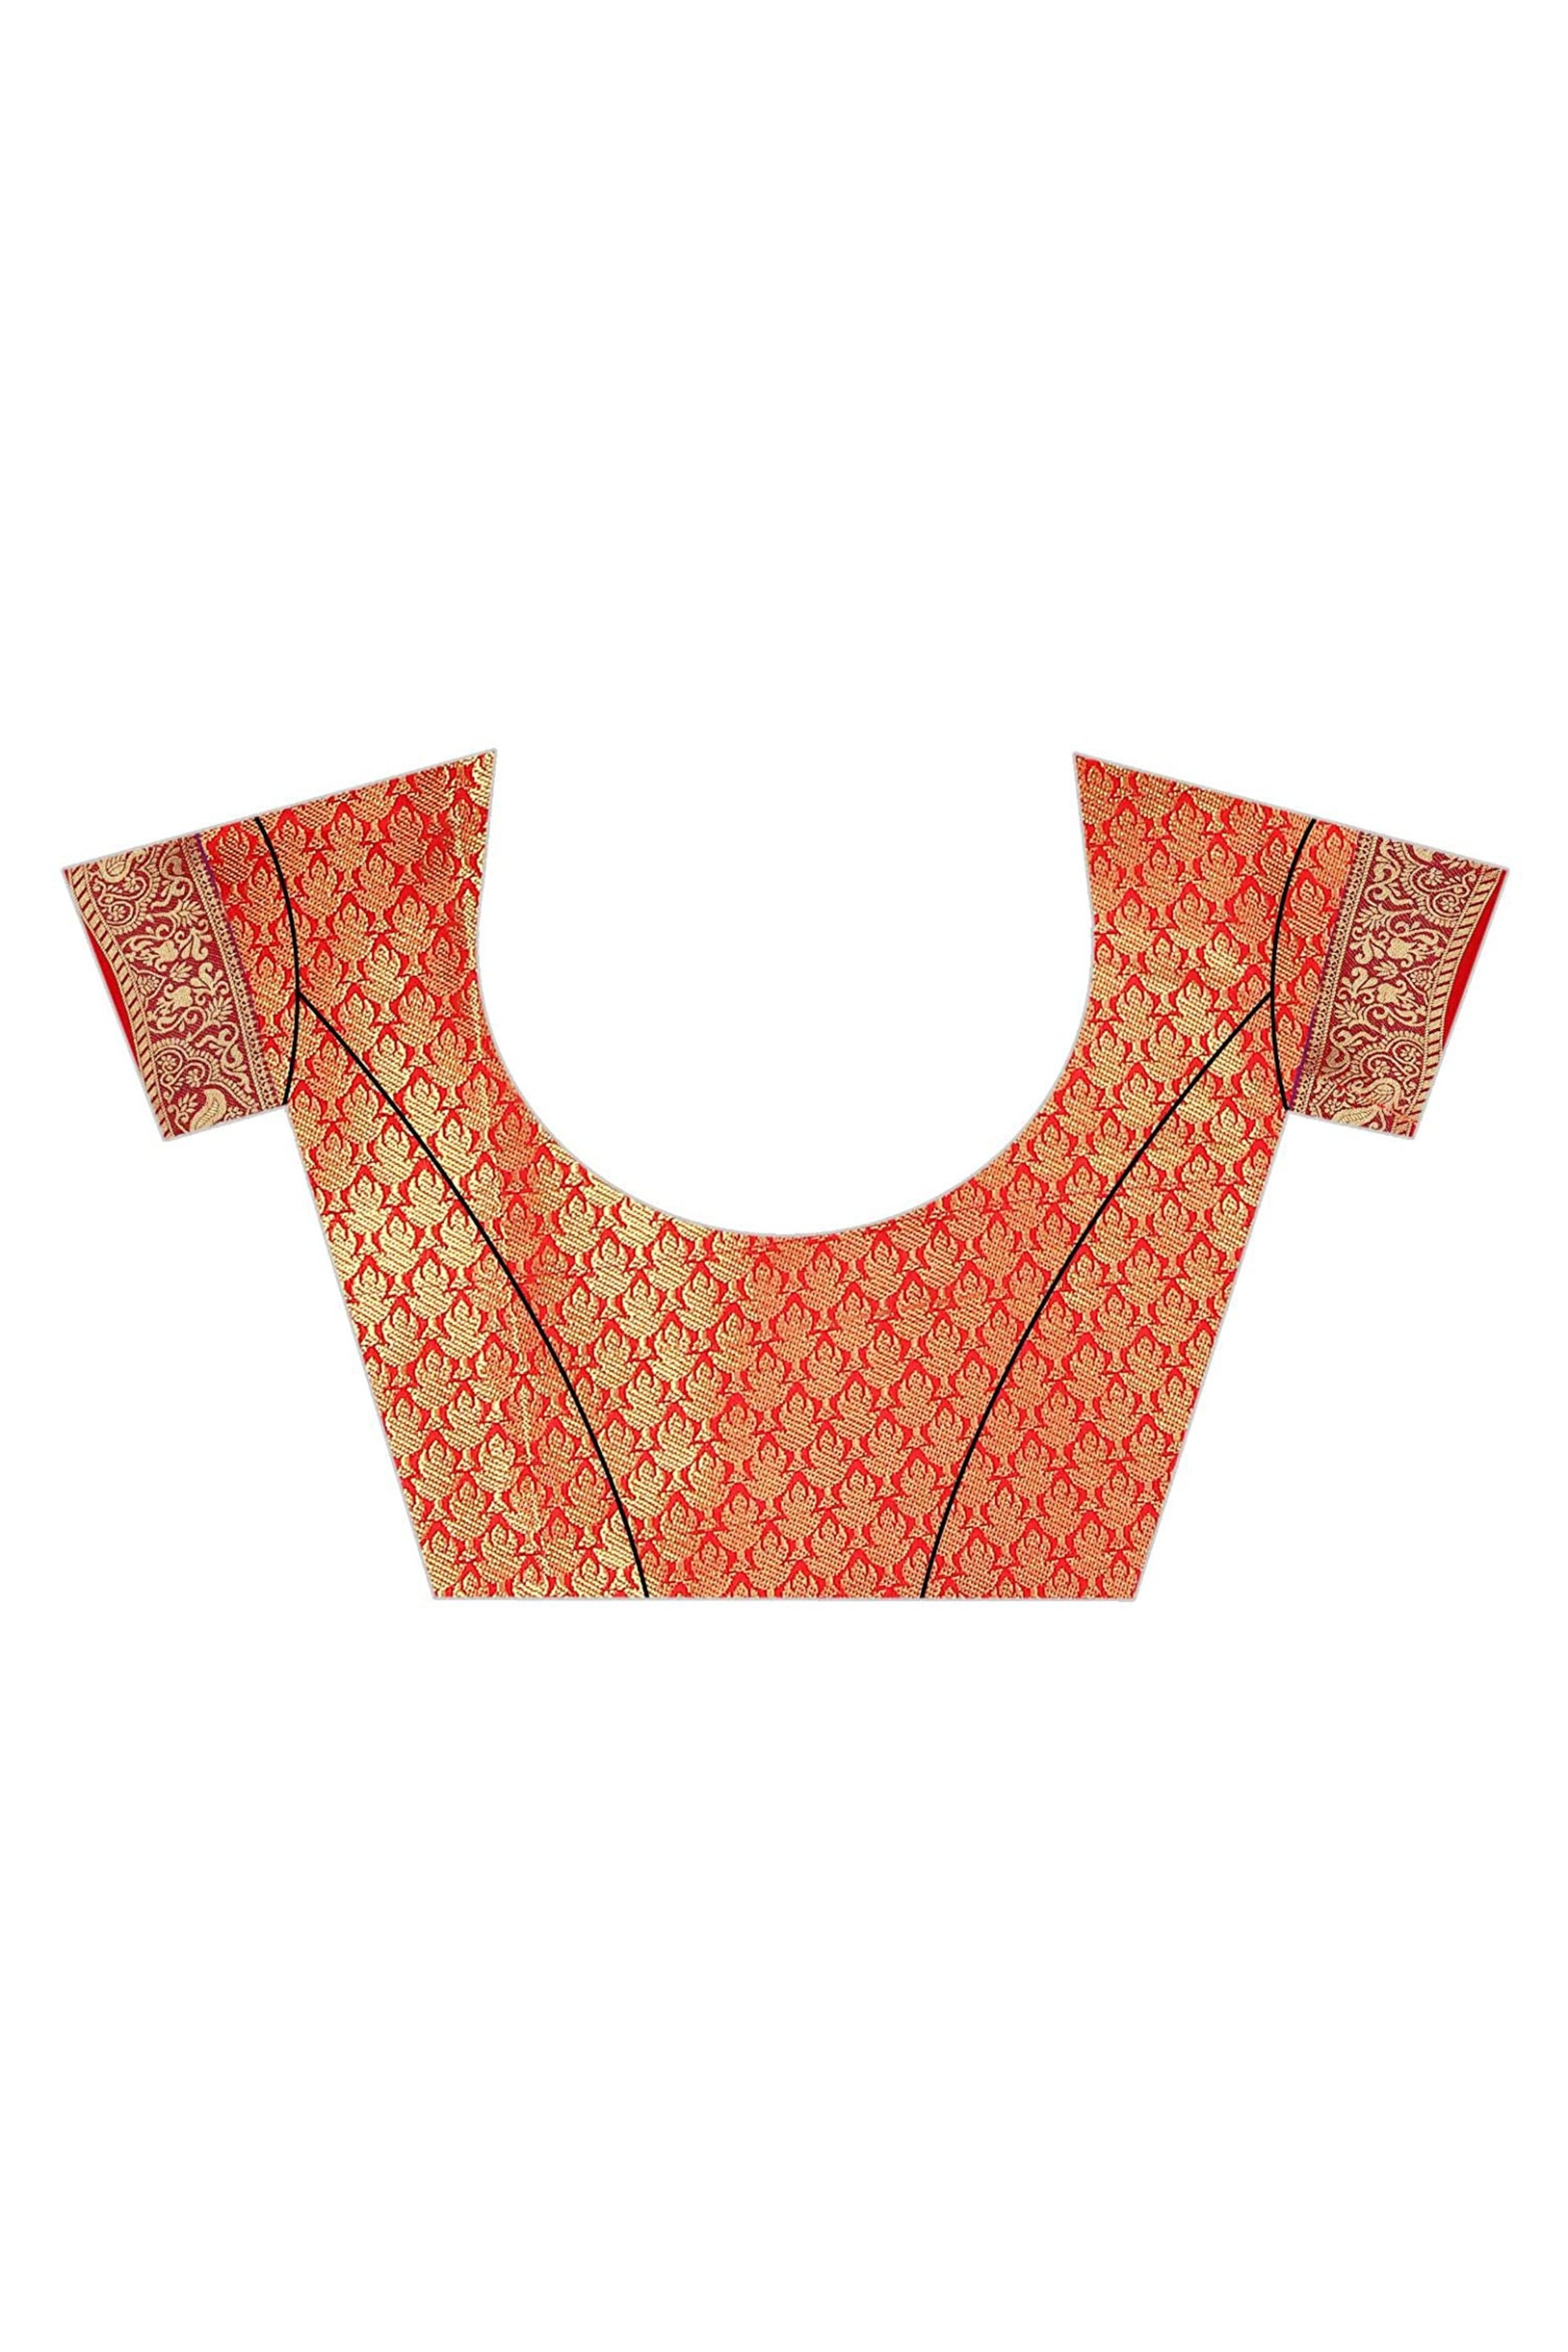 jacquard silk saree blouse